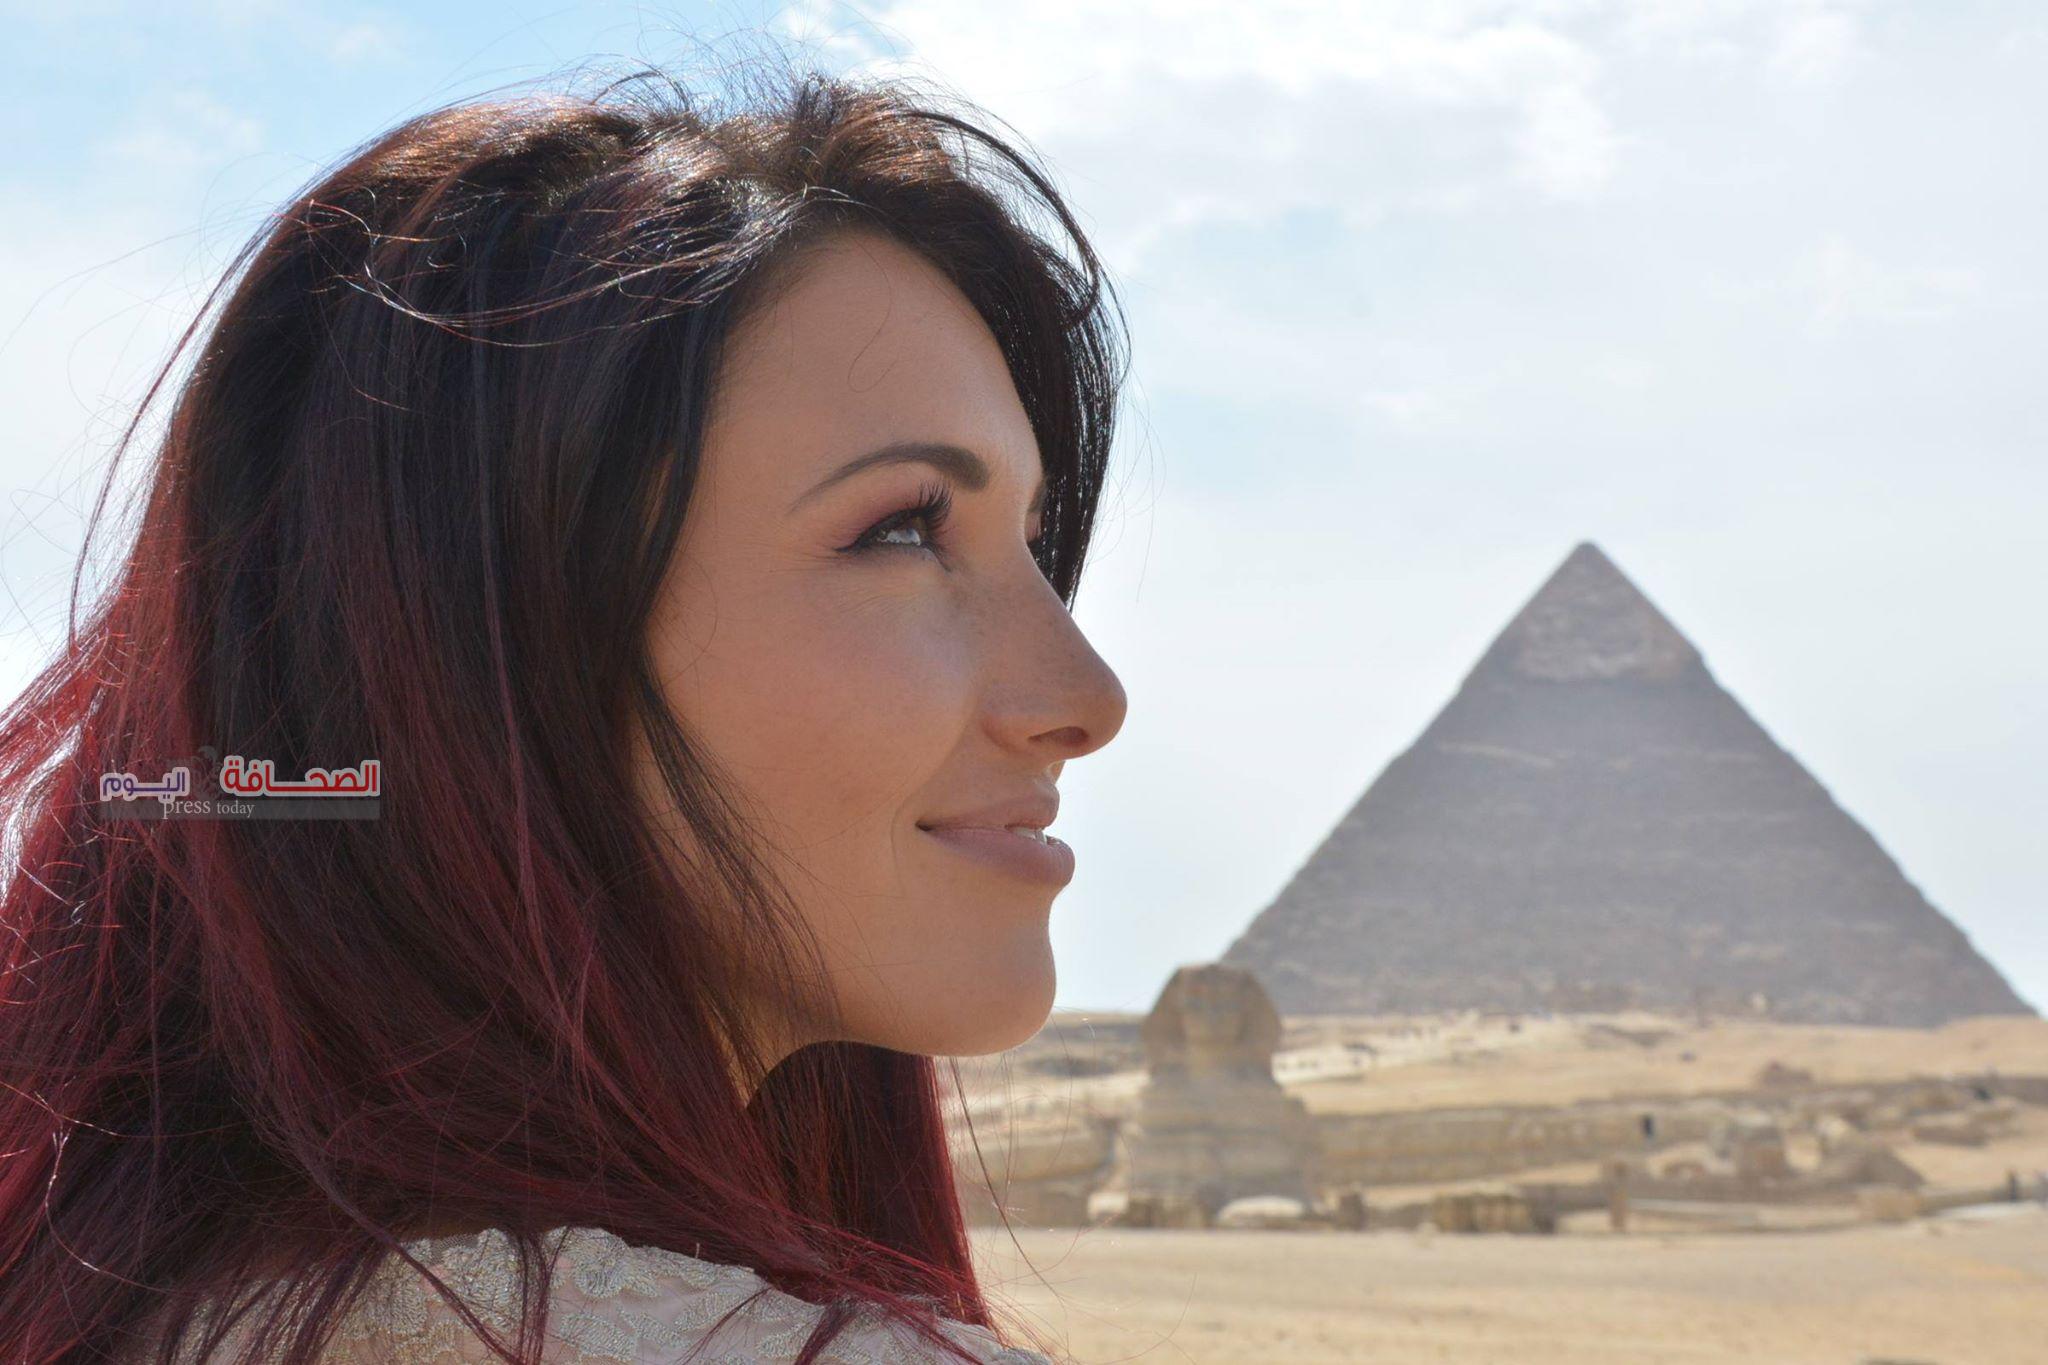 بالصور . ملكات الجمال تسجل ذكرياتهم بمنطقة الأهرامات على مواقع التواصل